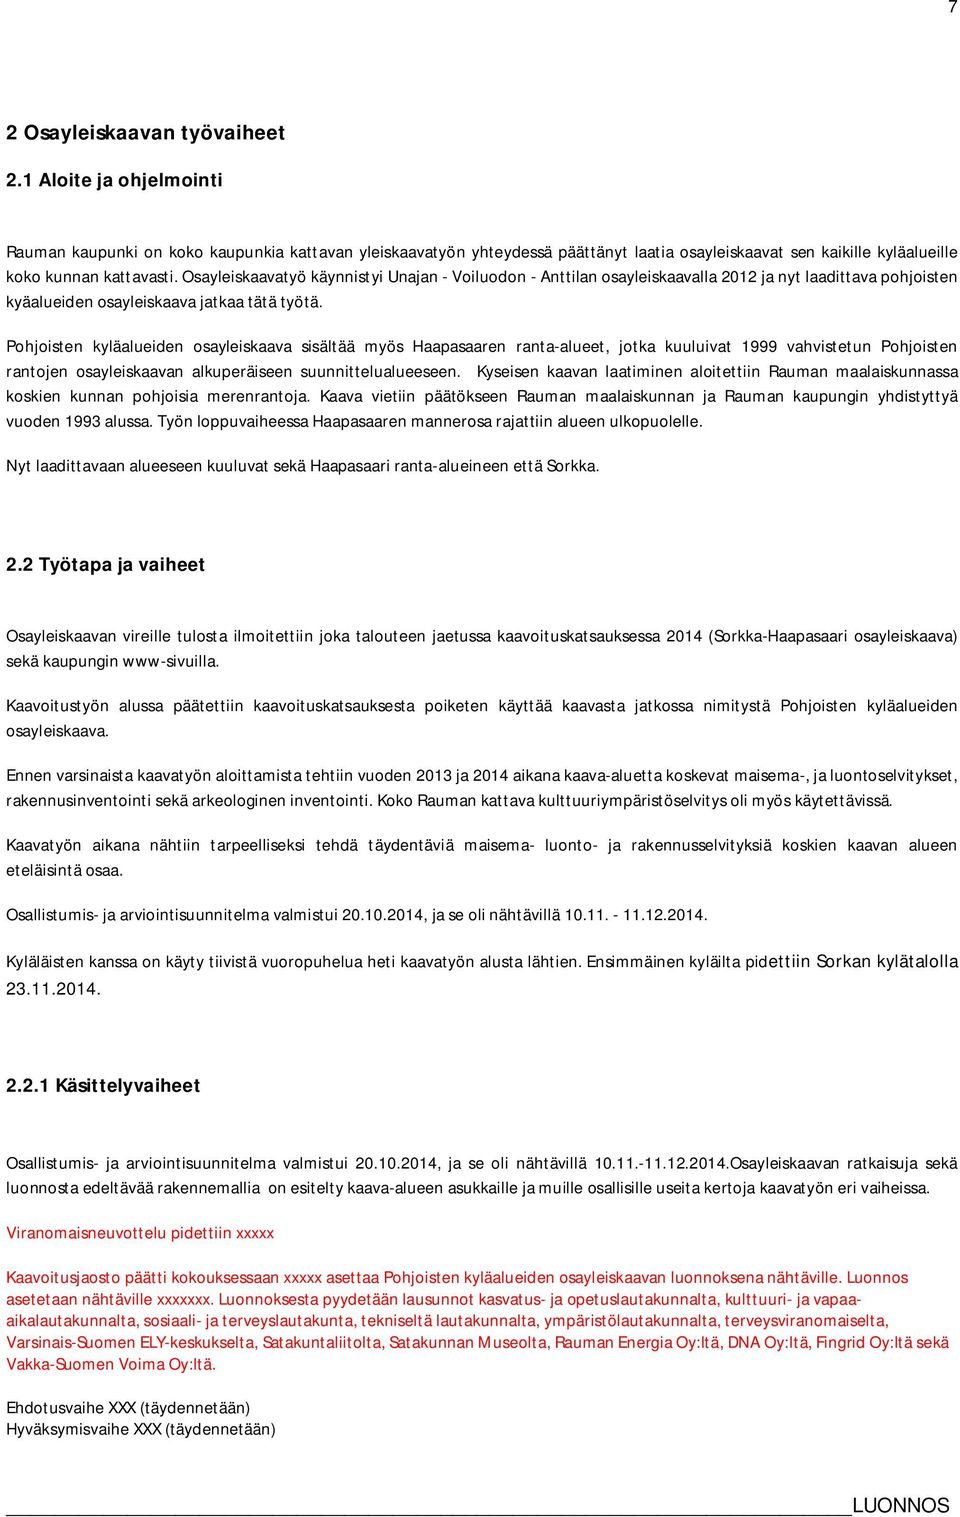 Osayleiskaavatyö käynnistyi Unajan - Voiluodon - Anttilan osayleiskaavalla 2012 ja nyt laadittava pohjoisten kyäalueiden osayleiskaava jatkaa tätä työtä.